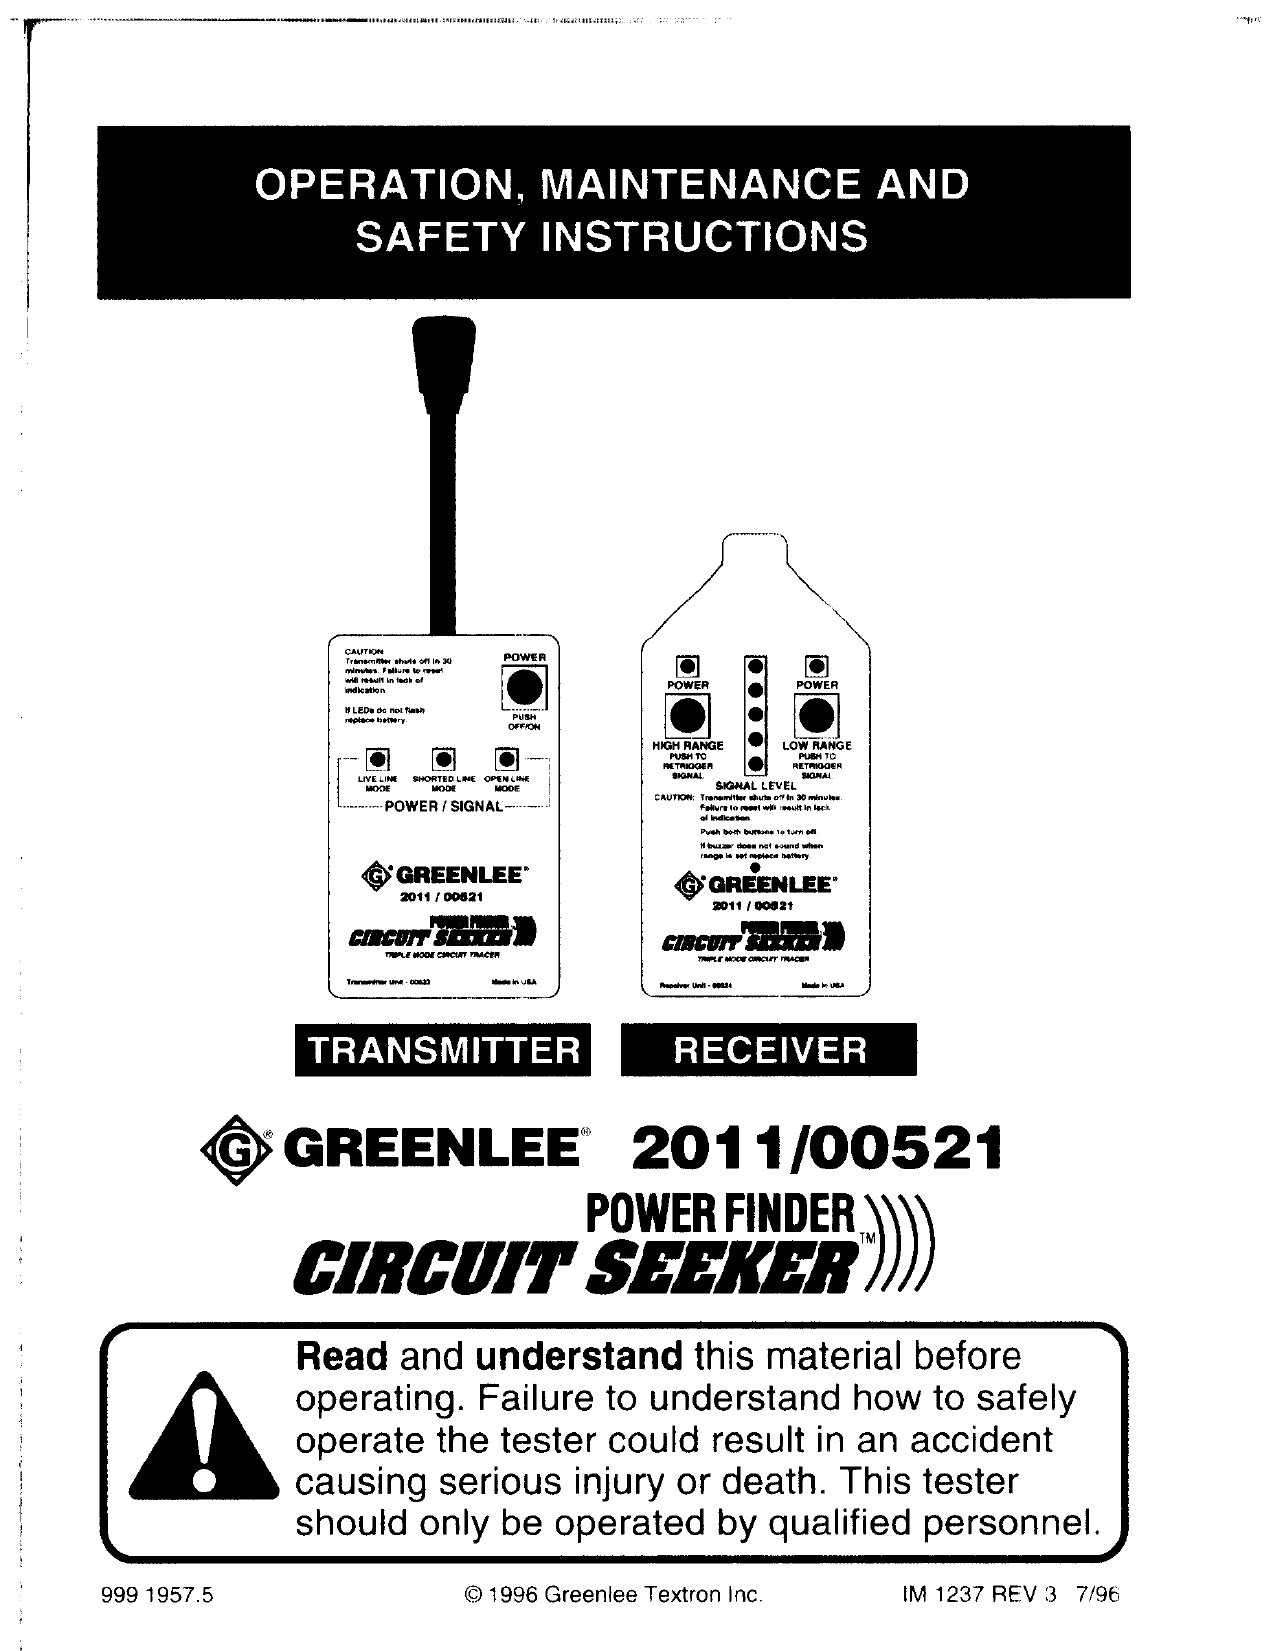 Greenlee Case 00520 Elec Test Instruments 